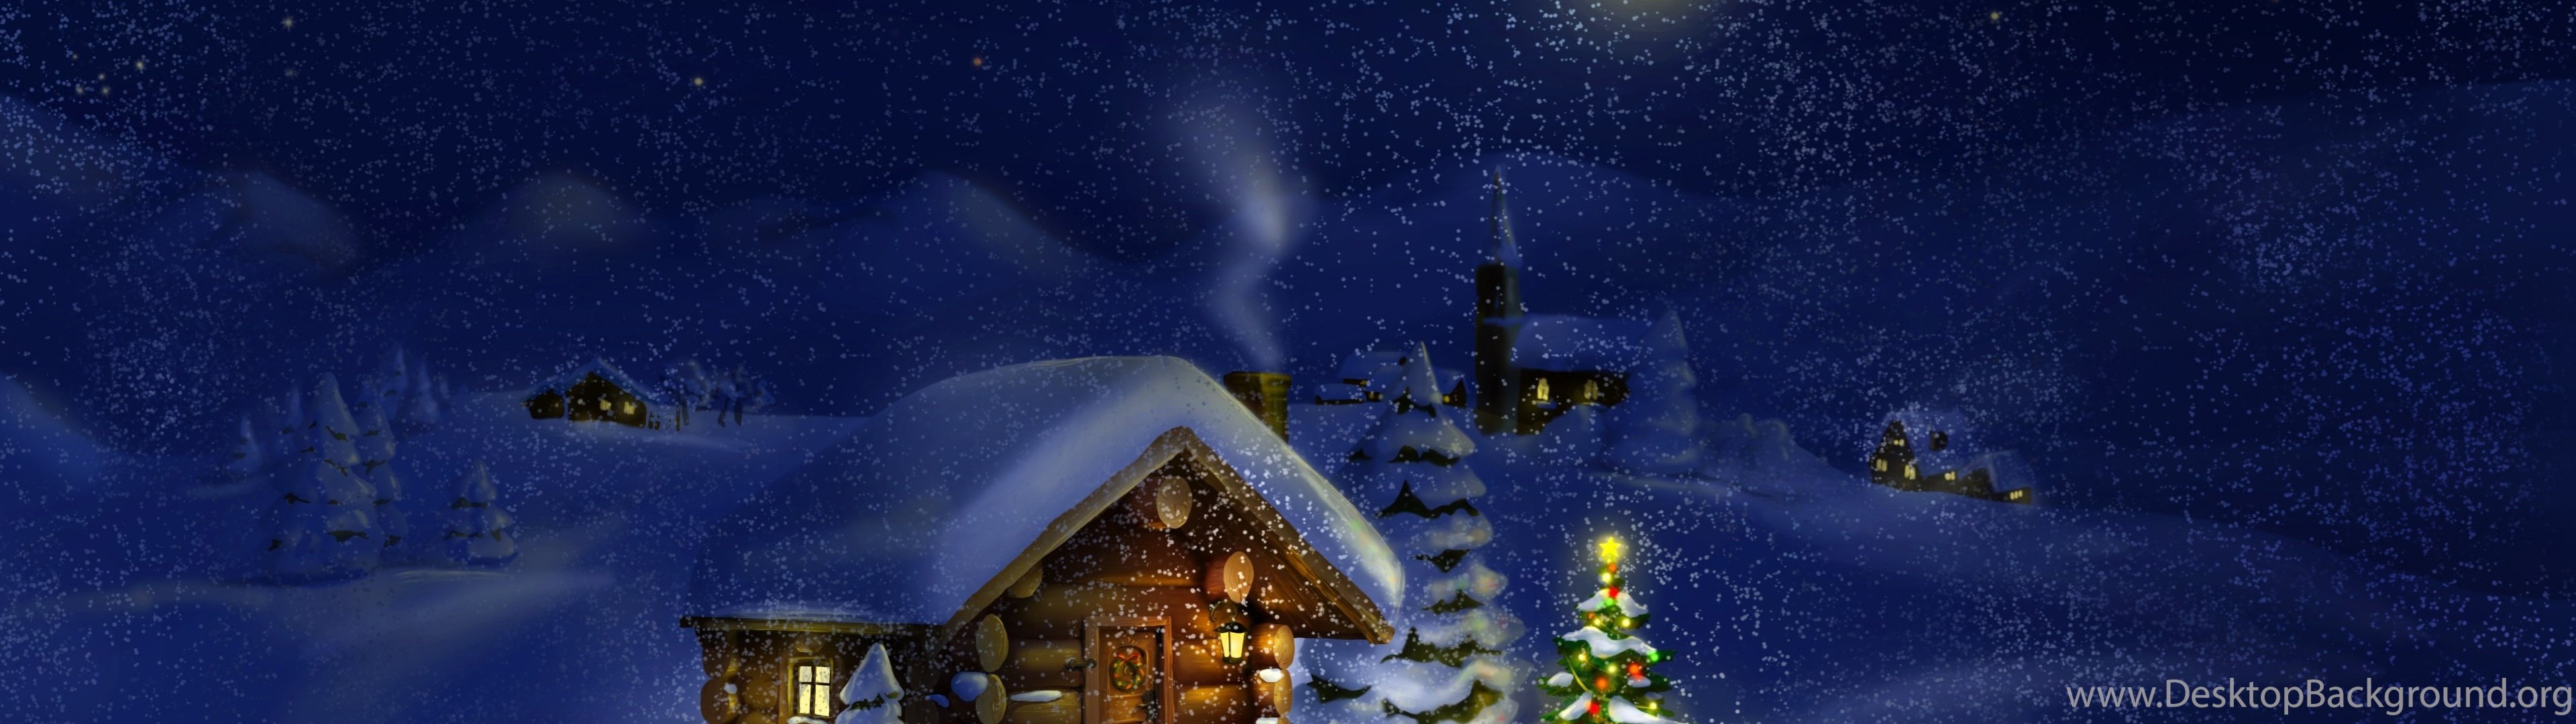 デュアルモニターのクリスマスの壁紙,冬,空,夜,雰囲気,雪